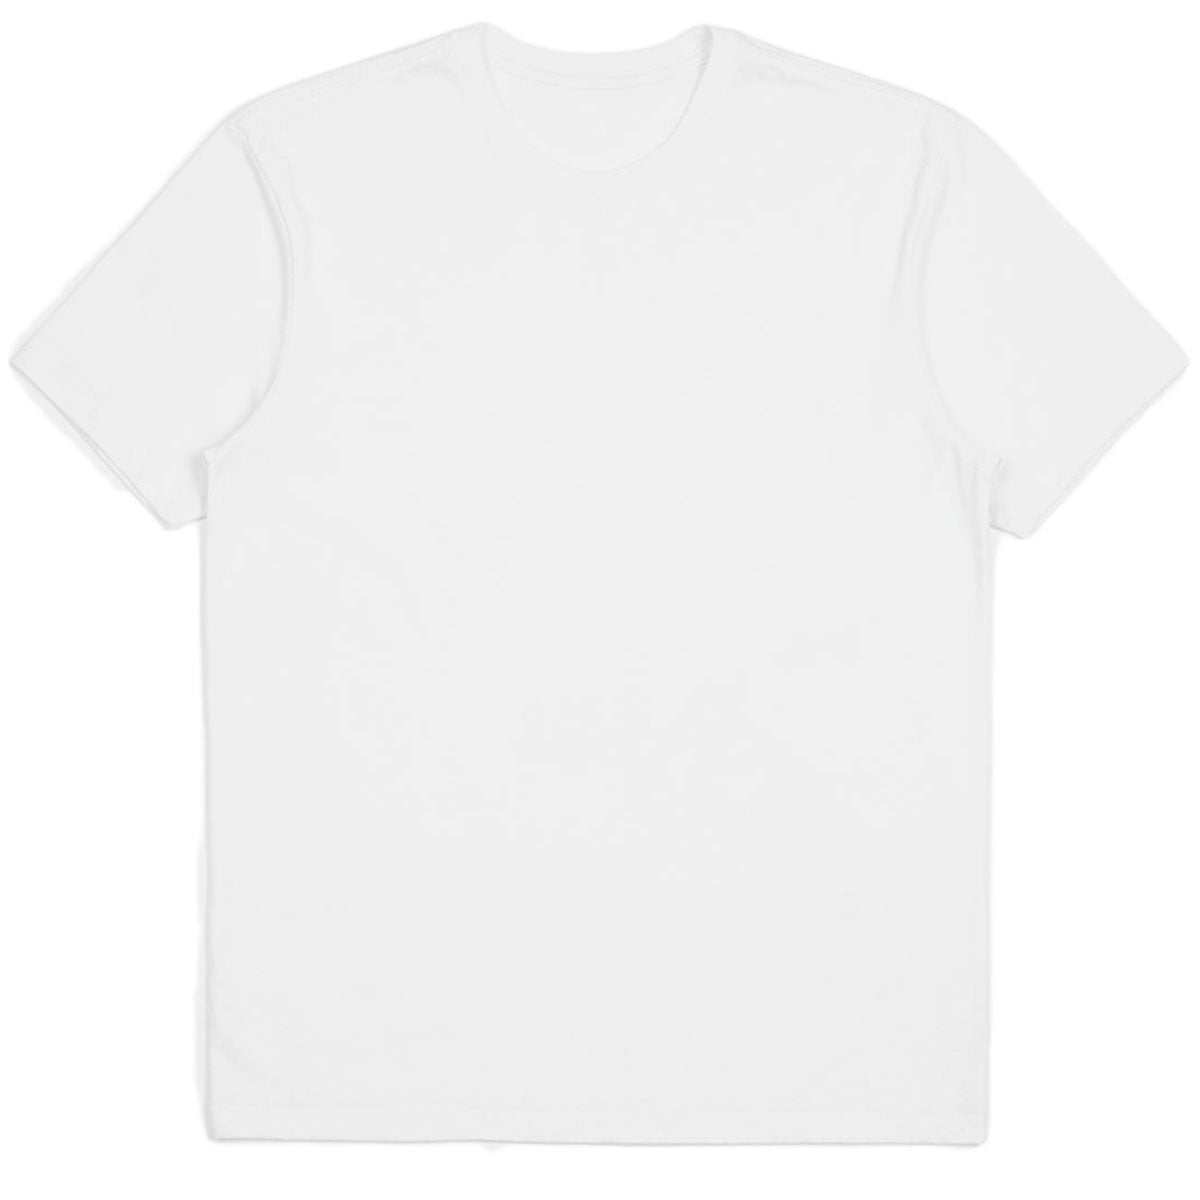 Brixton Basic T-Shirt - White image 1